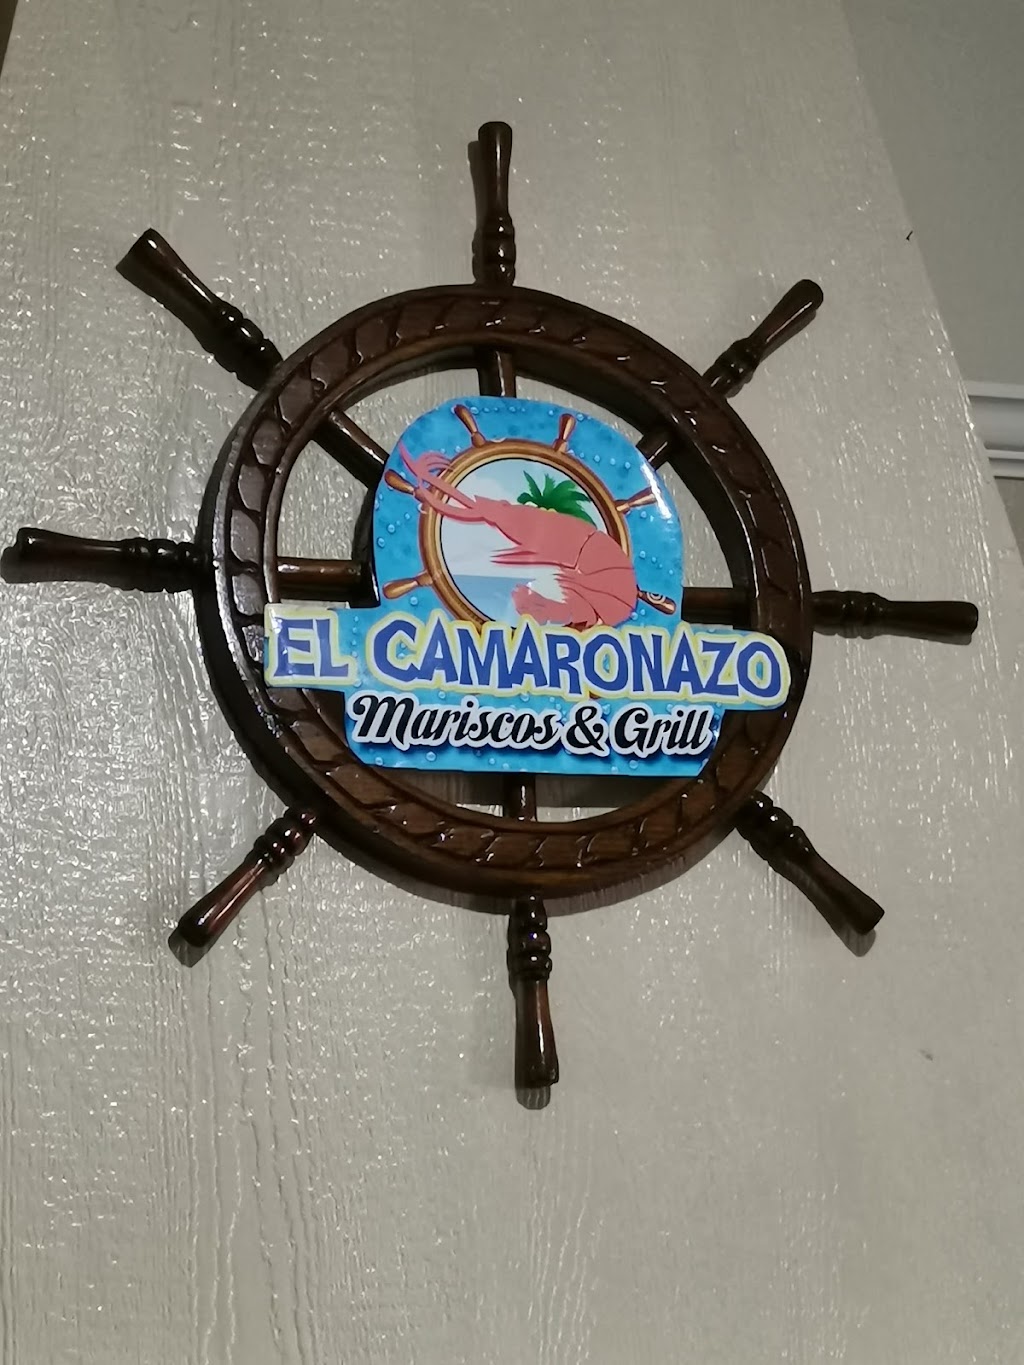 El Camaronazo Mariscos & Grill | Linaza 404, Centro de Anahuac, 65030 Anáhuac, N.L., Mexico | Phone: 873 737 0672